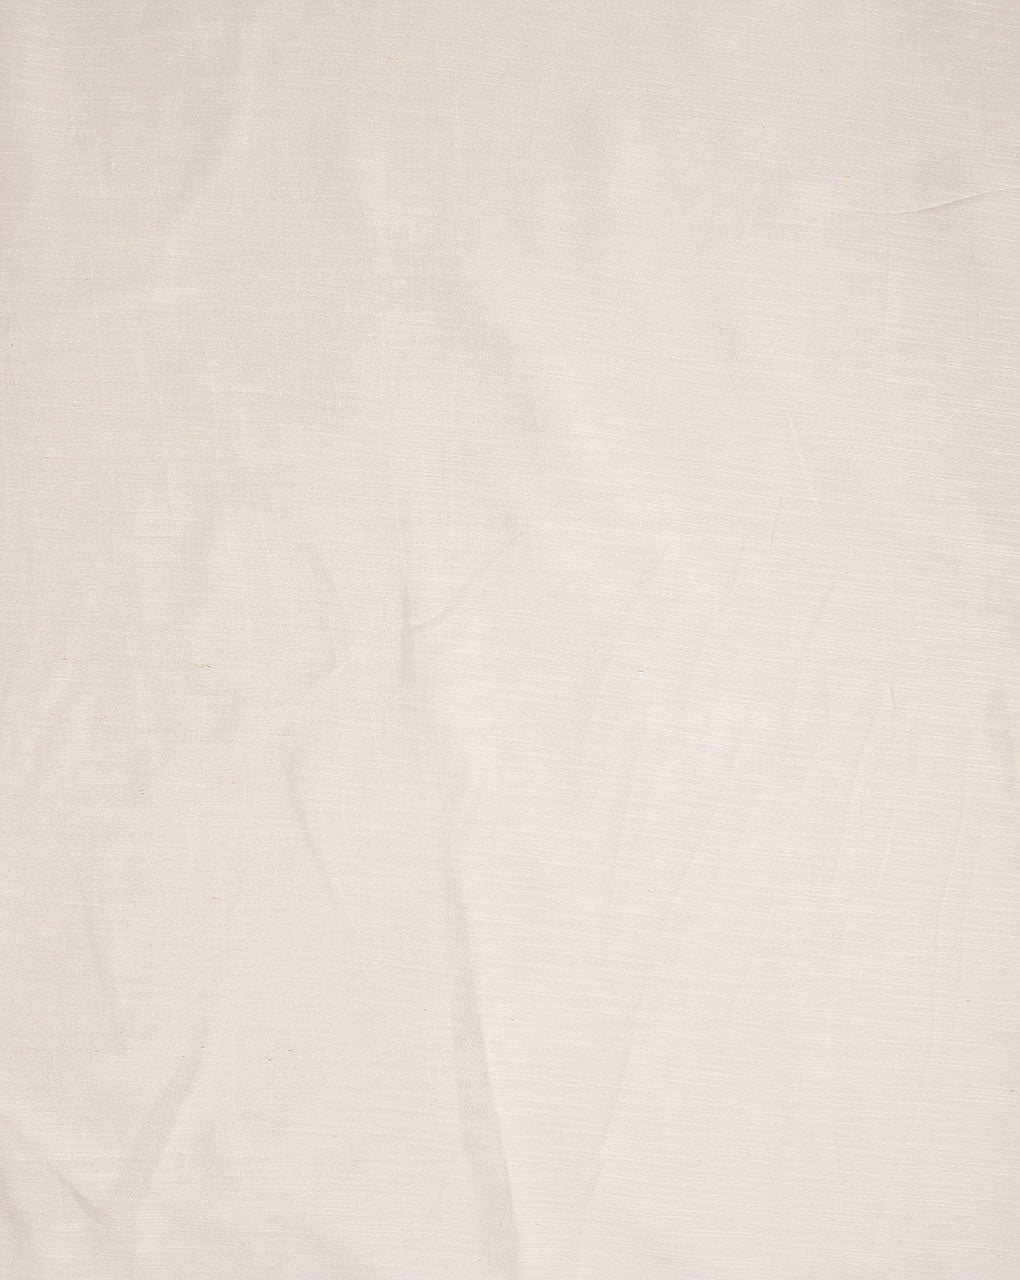 Dyeable Liva Viscose Excel Linen ( Linen Silk K ) Fabric - Fabriclore.com